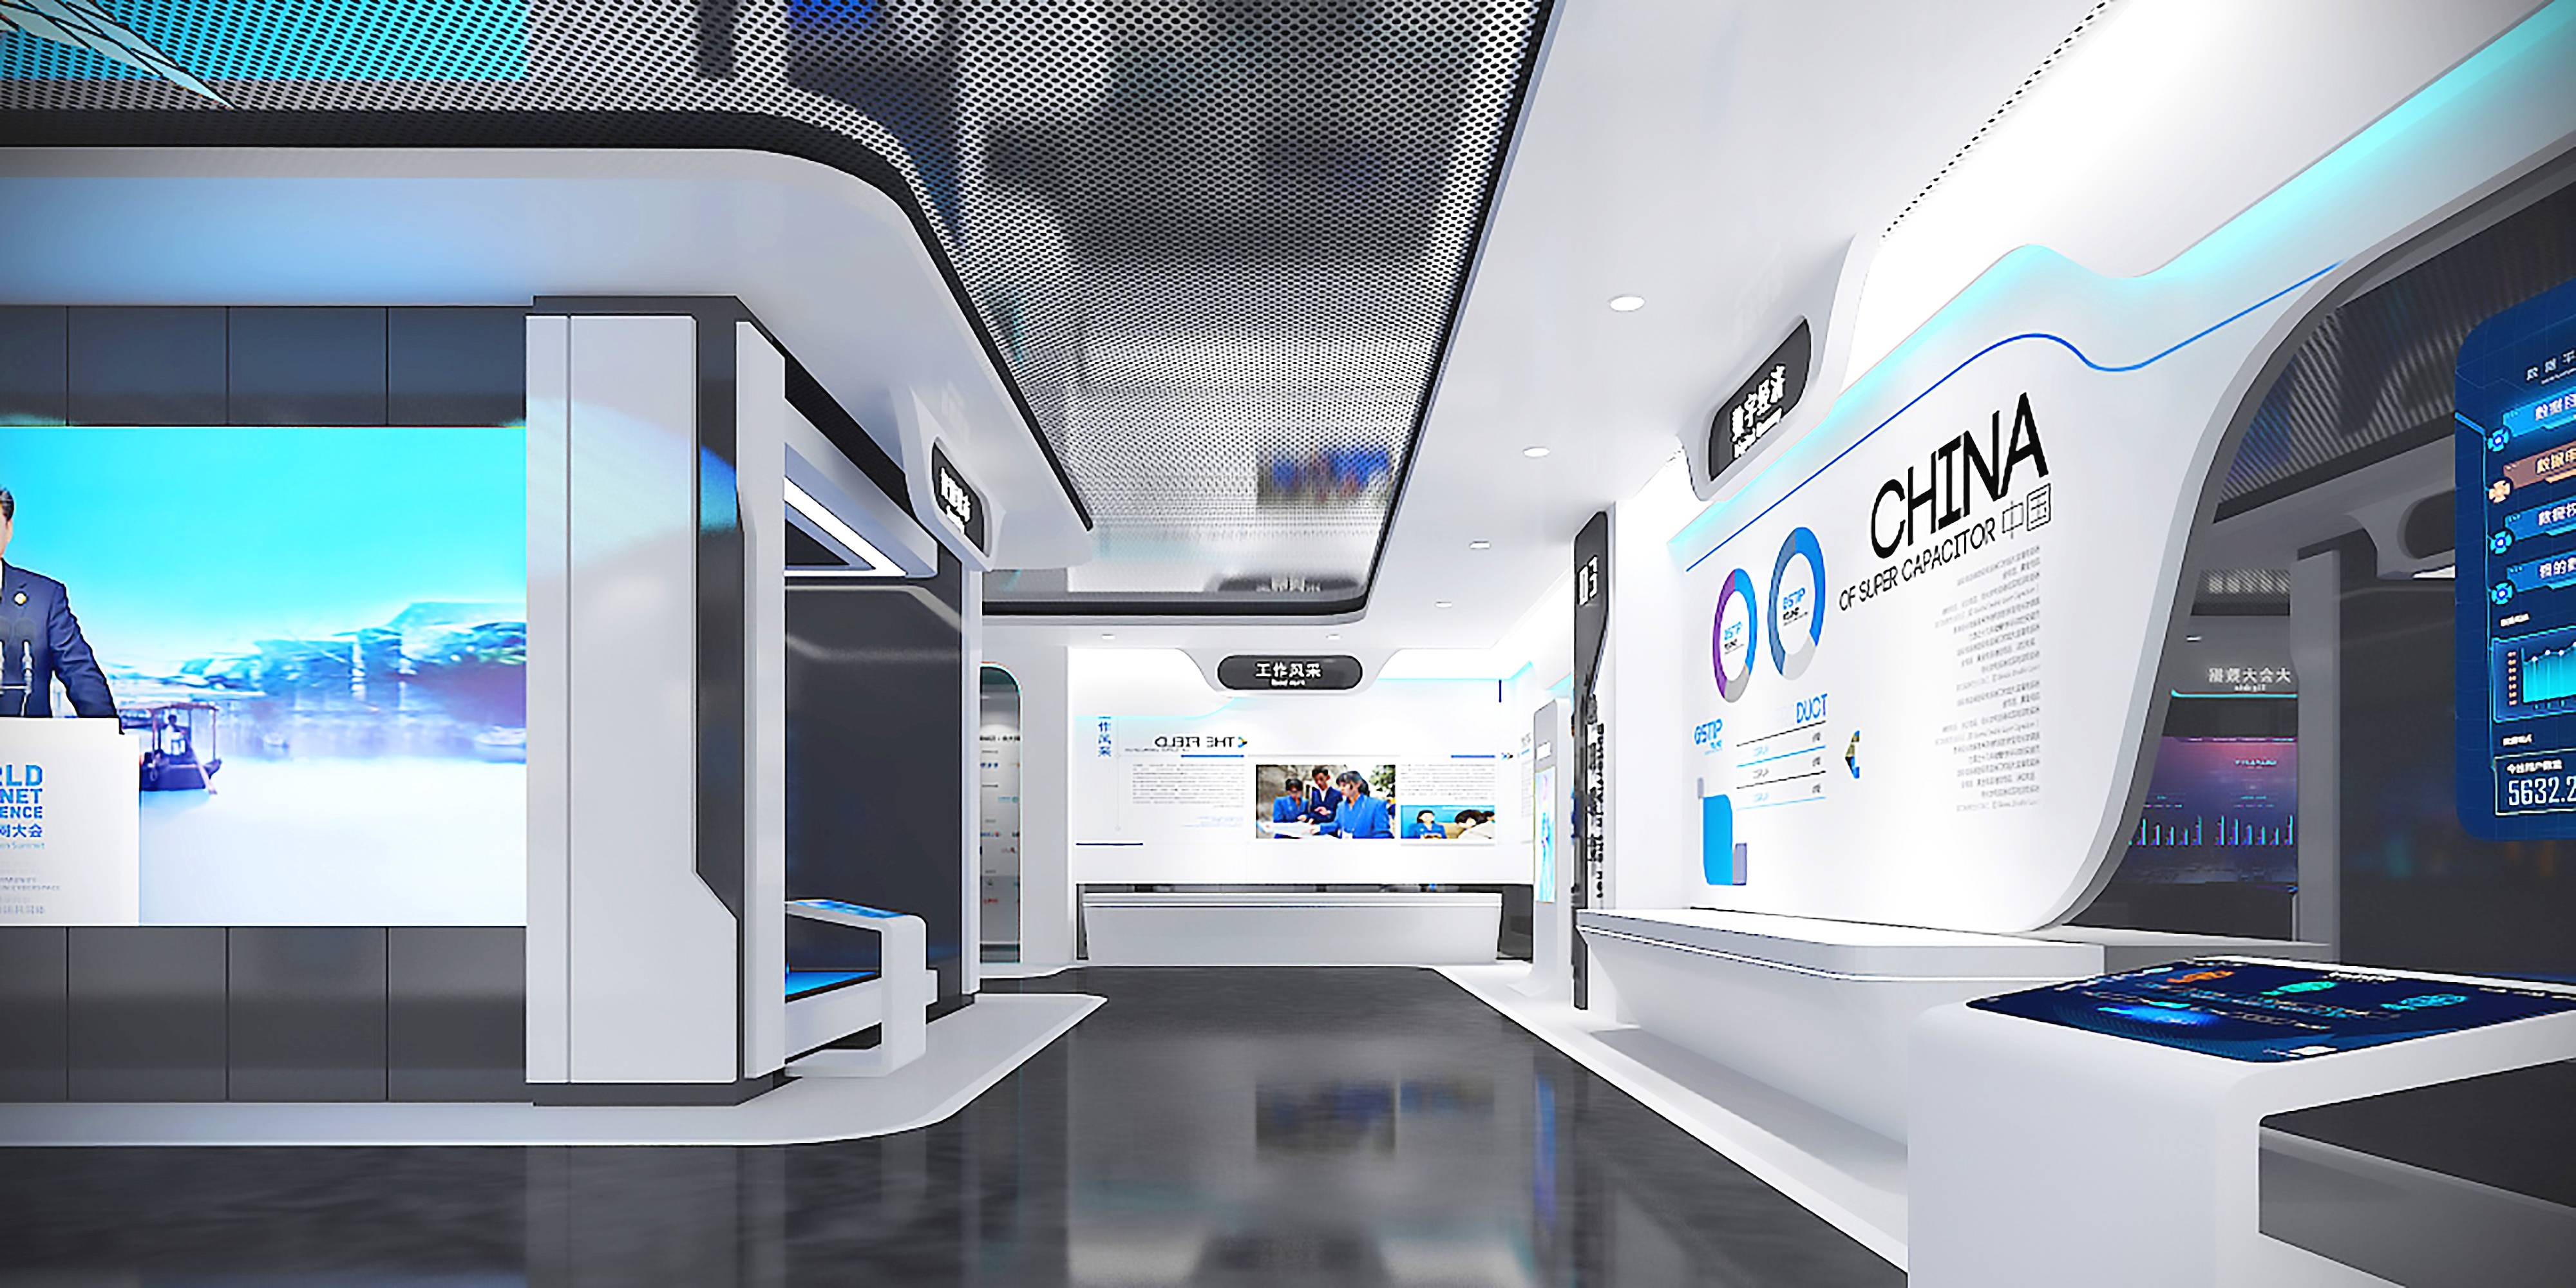 这是一张现代科技风格的展厅内部图片，展示有屏幕和互动设备，色调以蓝白为主，显得干净、未来感十足。